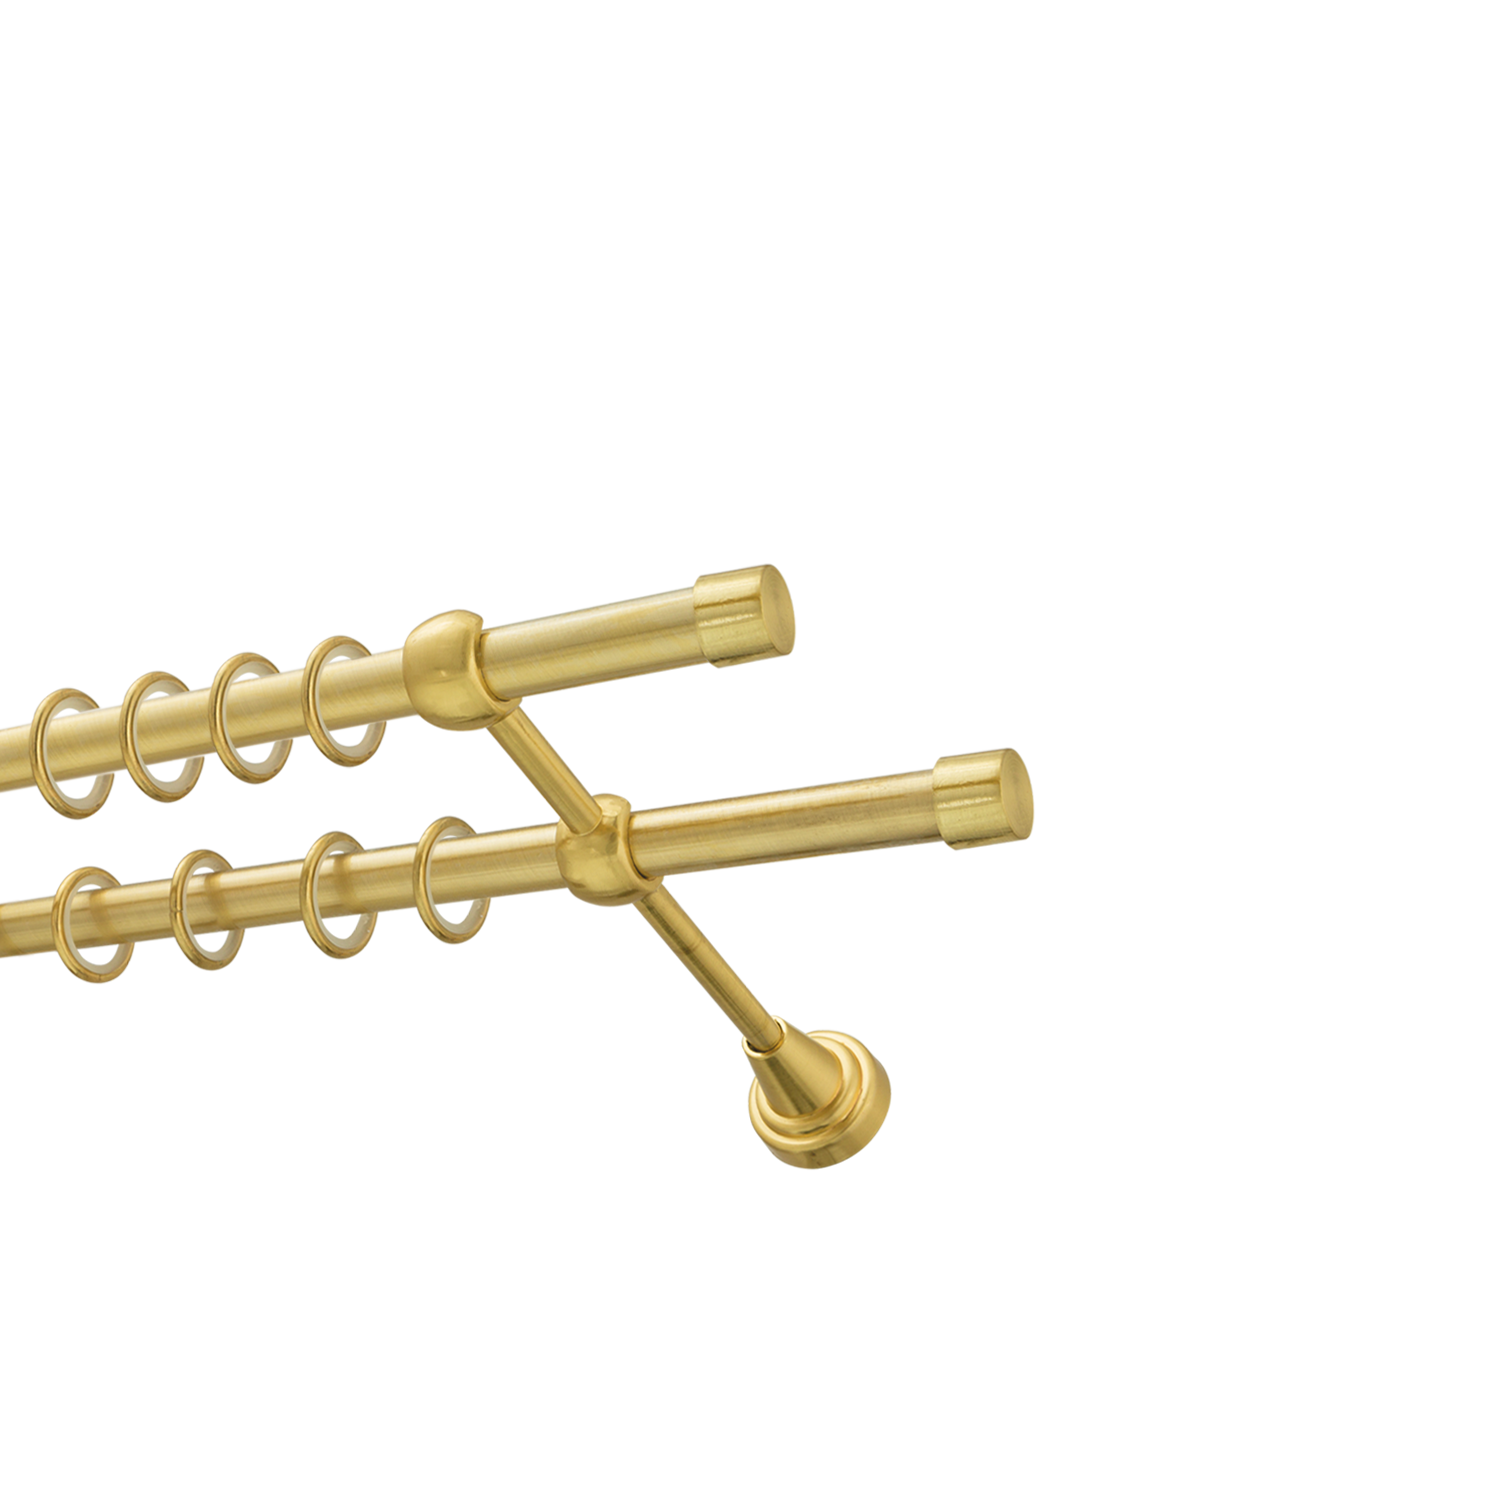 Металлический карниз для штор Заглушка, двухрядный 16/16 мм, золото, гладкая штанга, длина 180 см - фото Wikidecor.ru